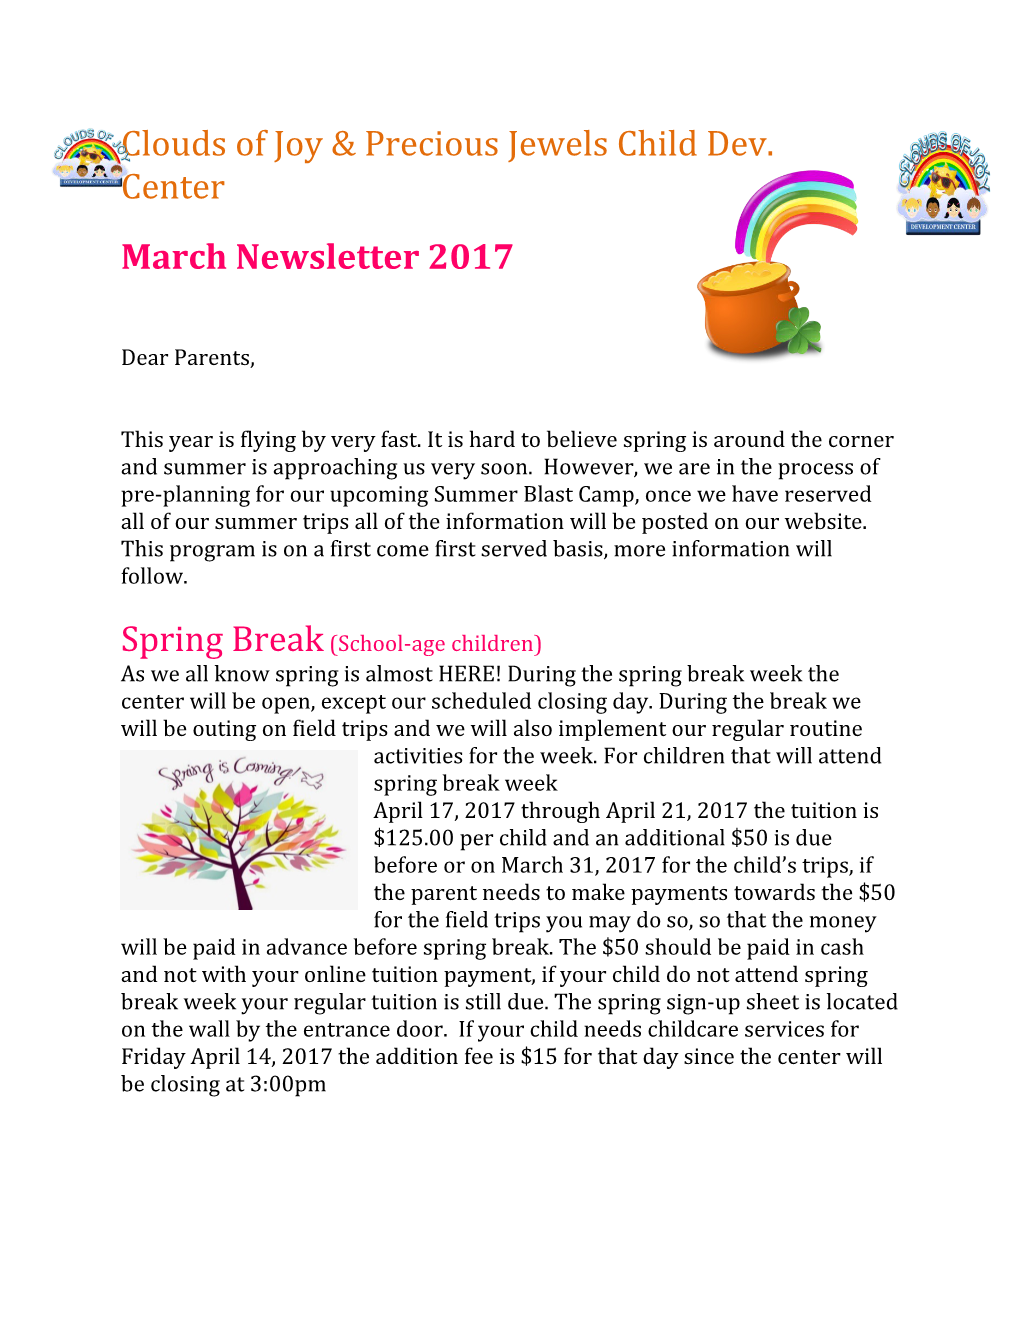 Spring Break (School-Age Children)